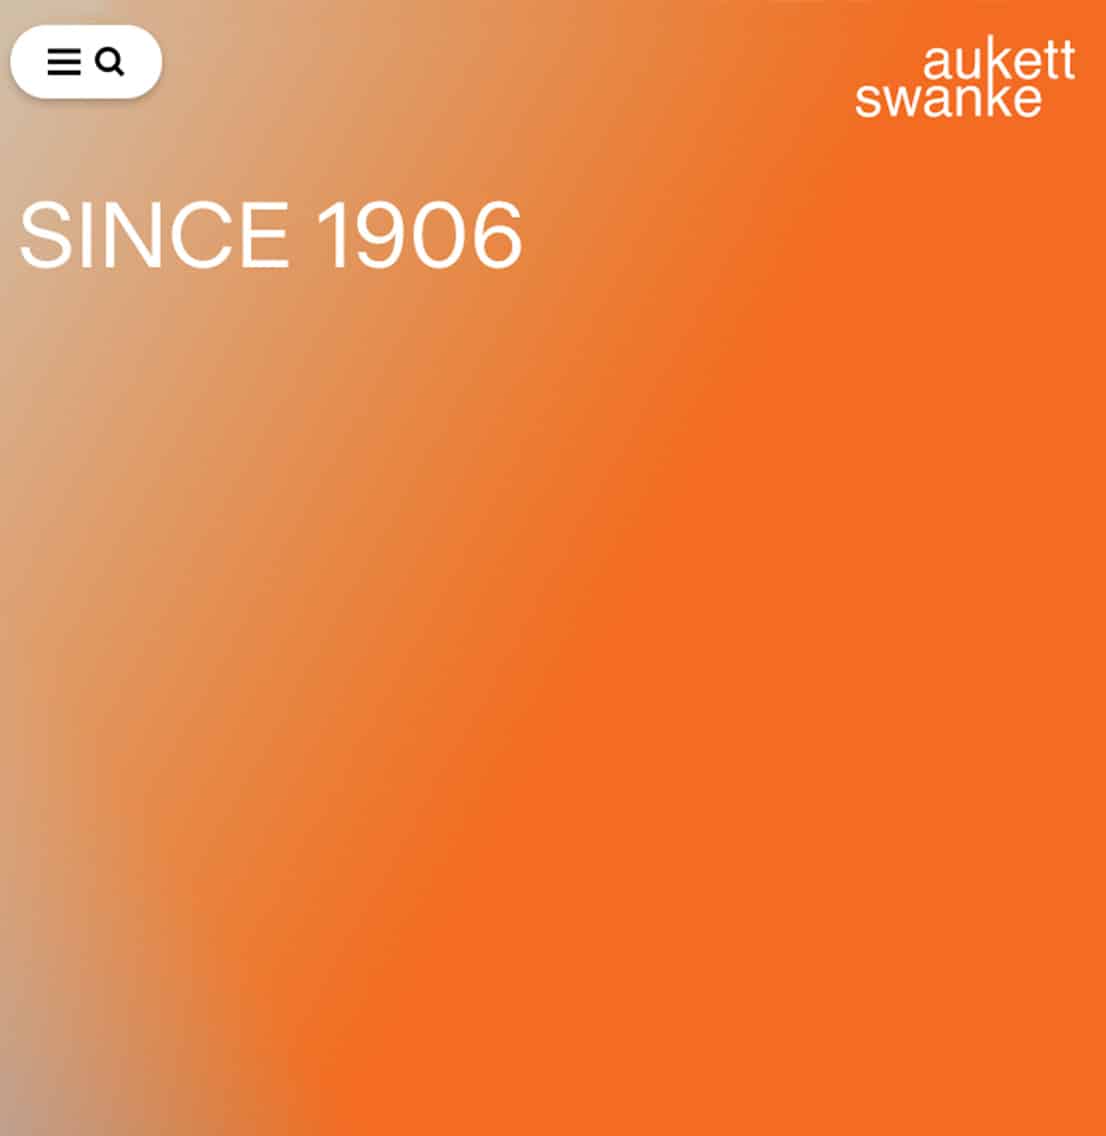 Aukett Swanke launches new website